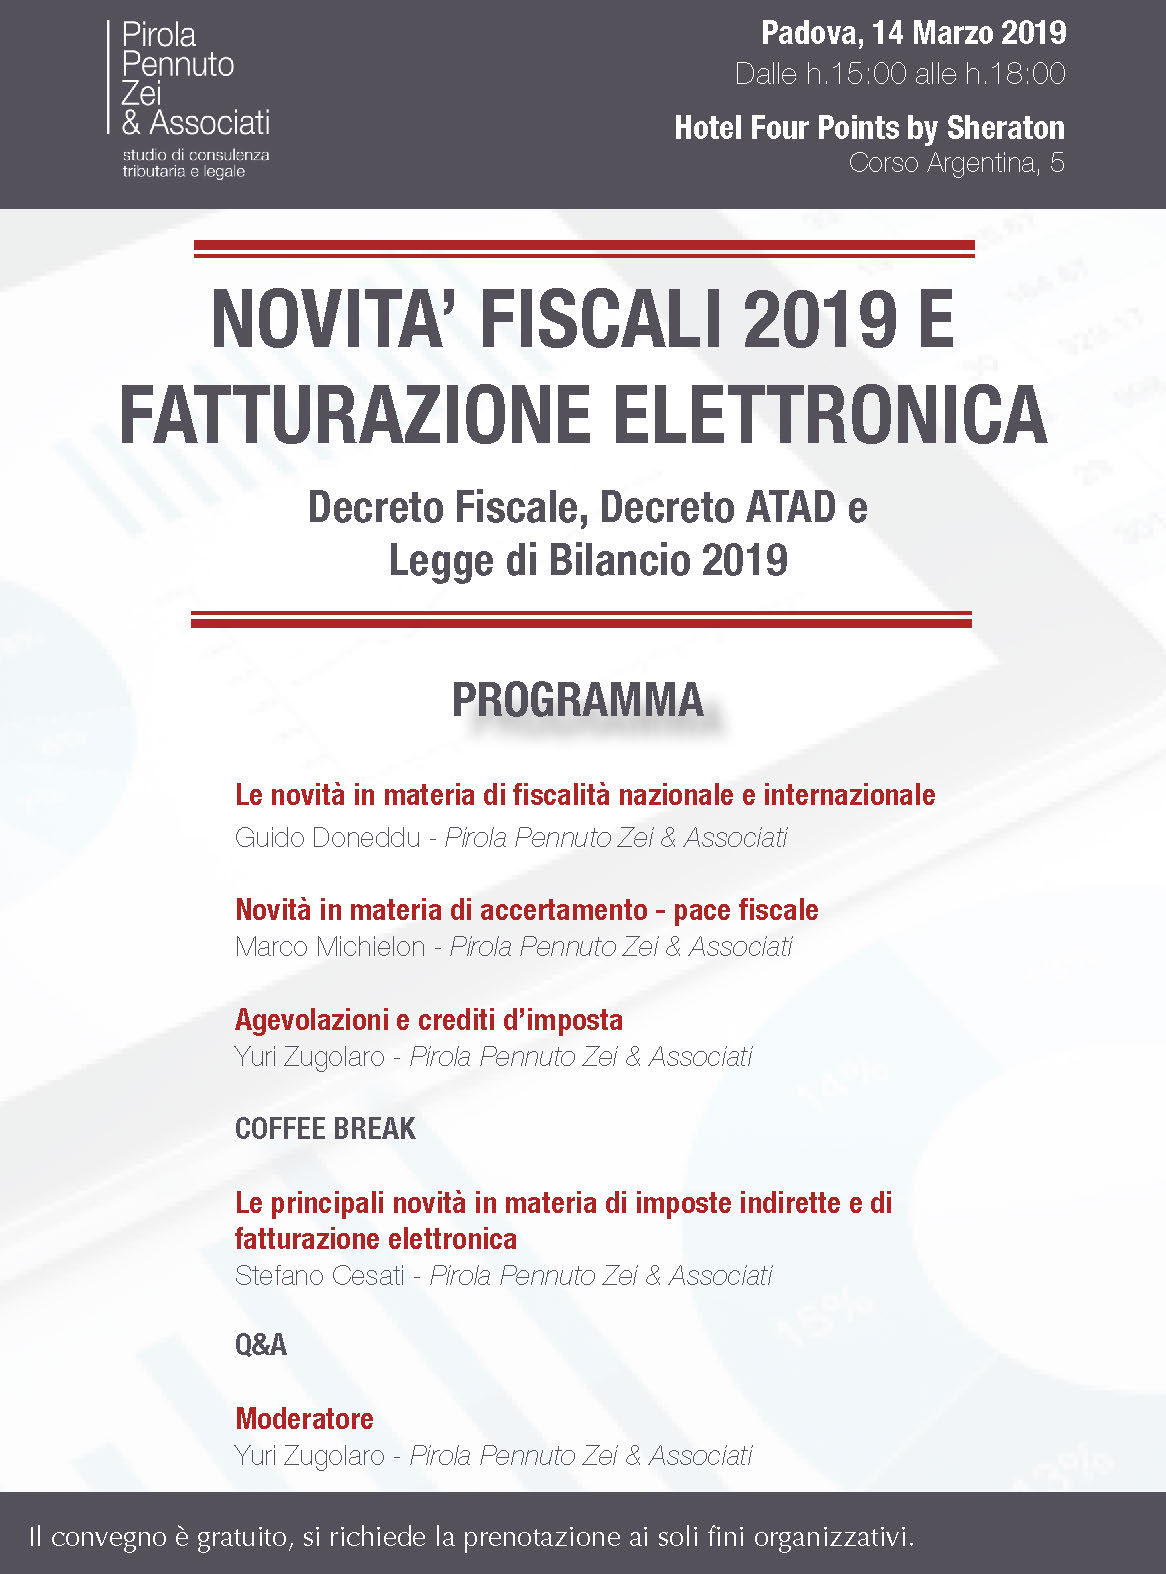 Novità fiscali 2019 Padova